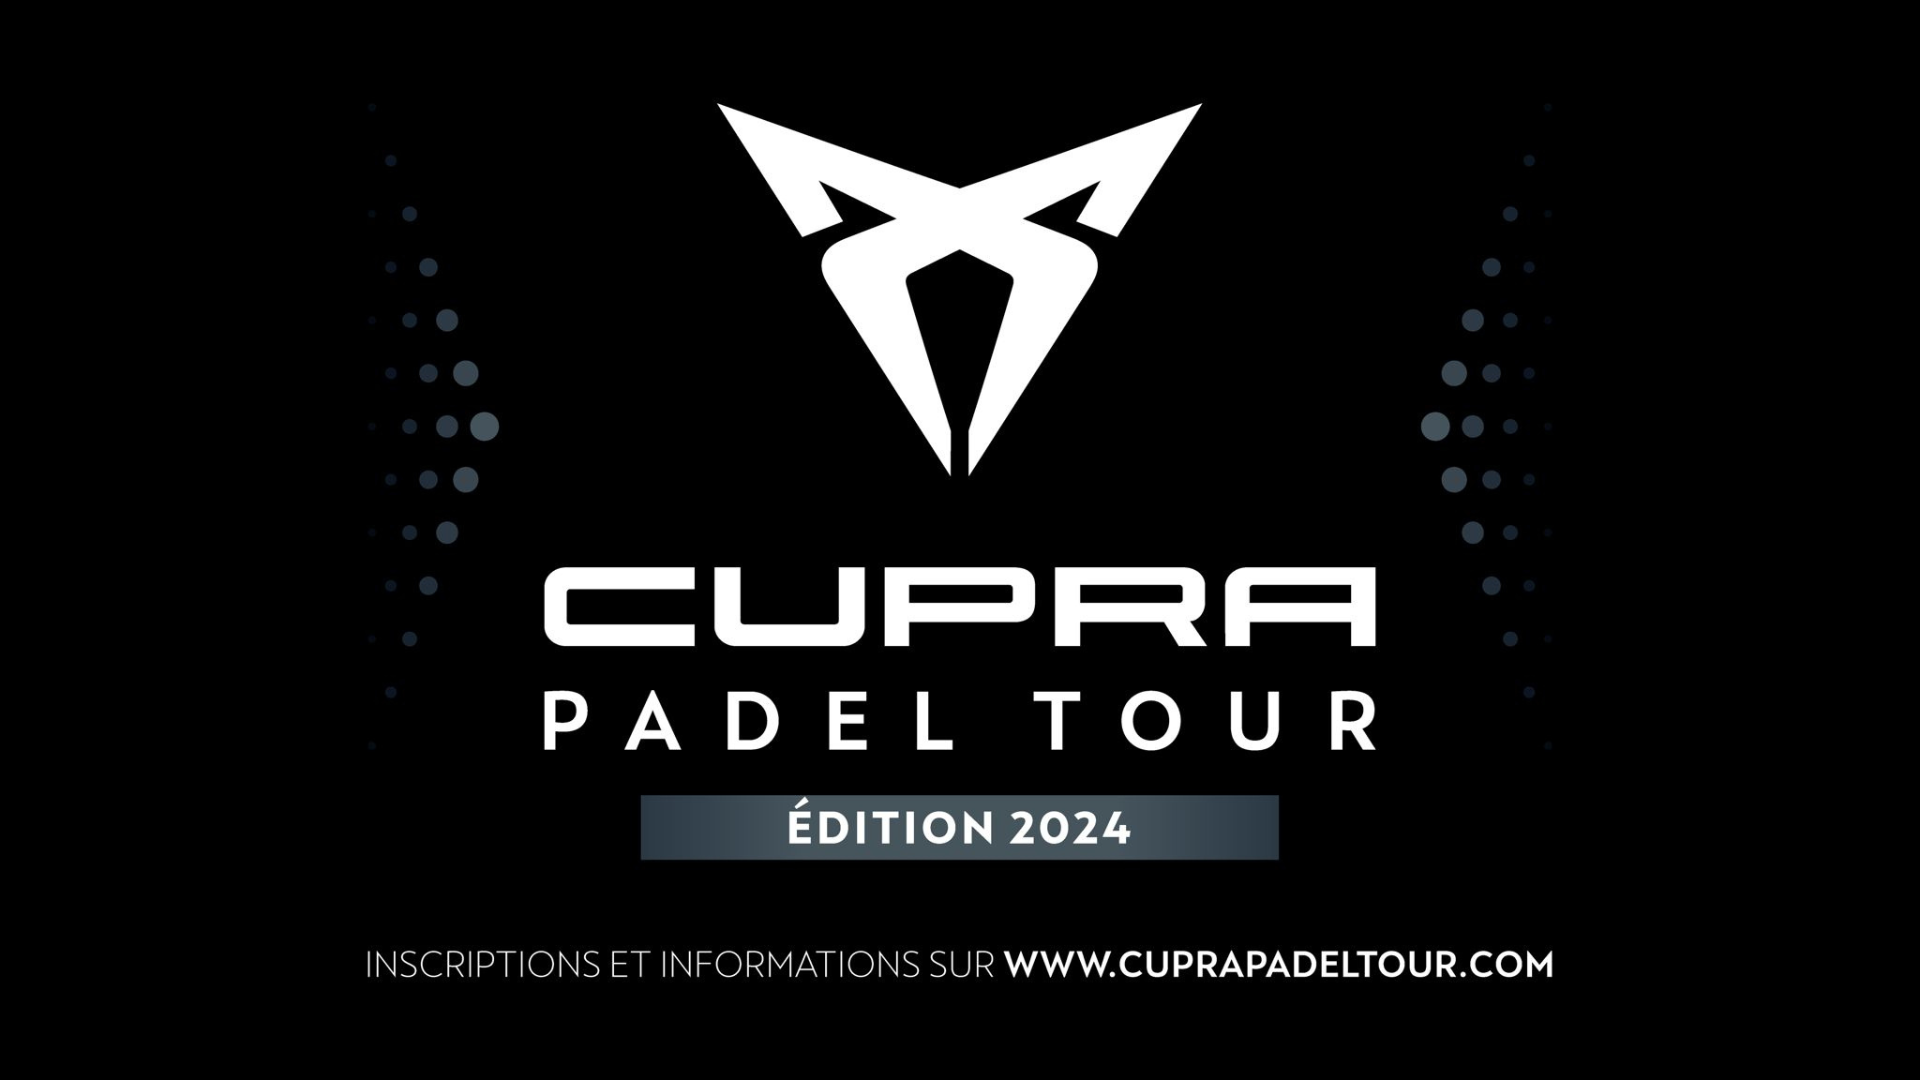 Lansering av CUPRA PADEL TUR 2024